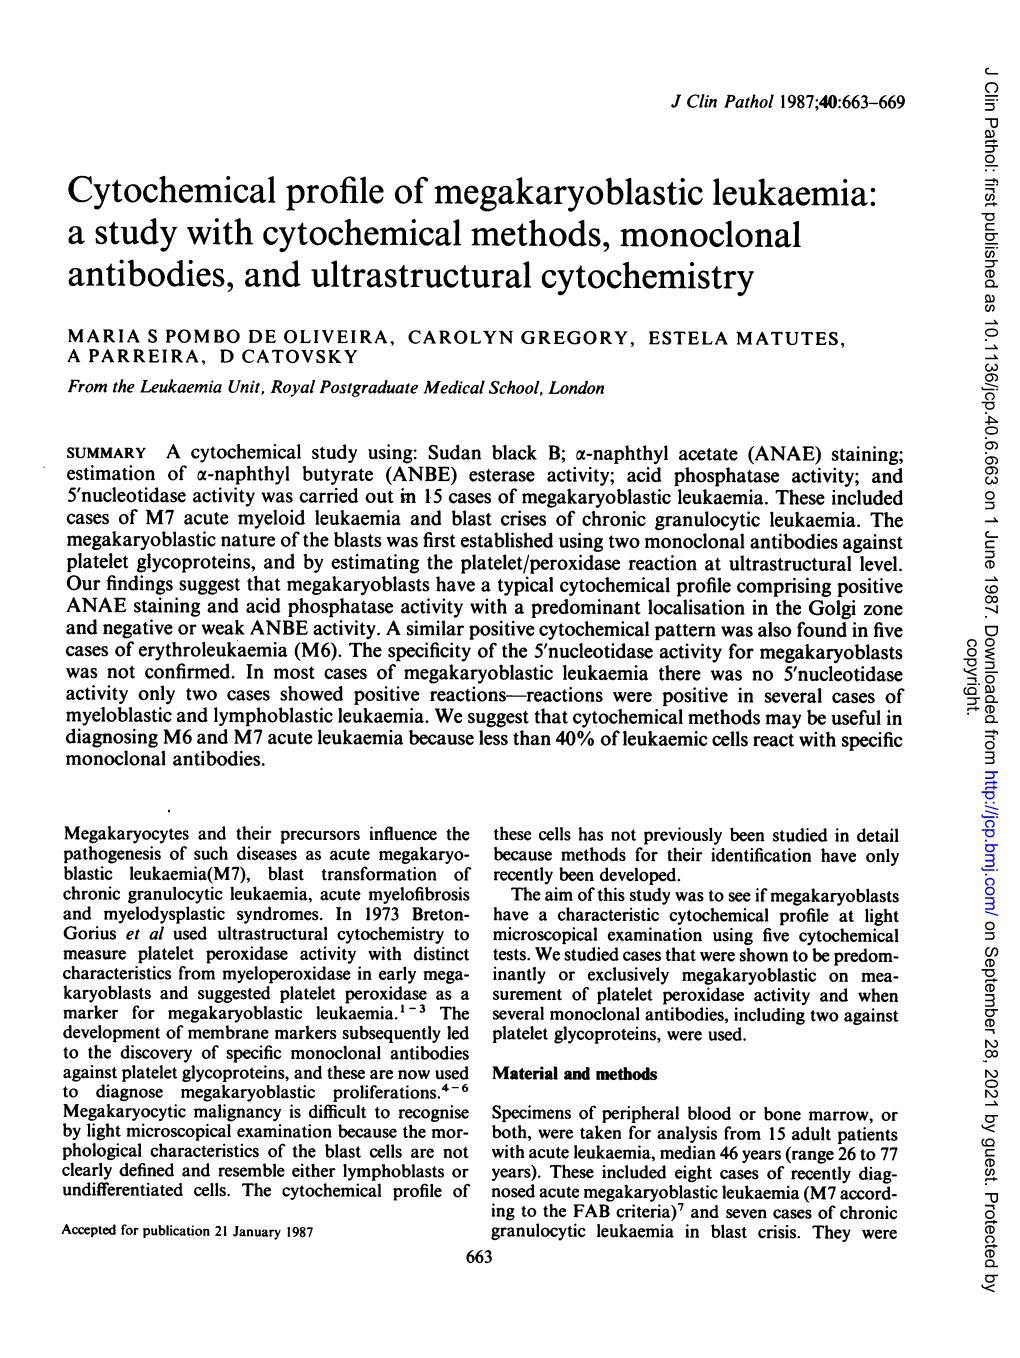 Cytochemical Profile Ofmegakaryoblastic Leukaemia